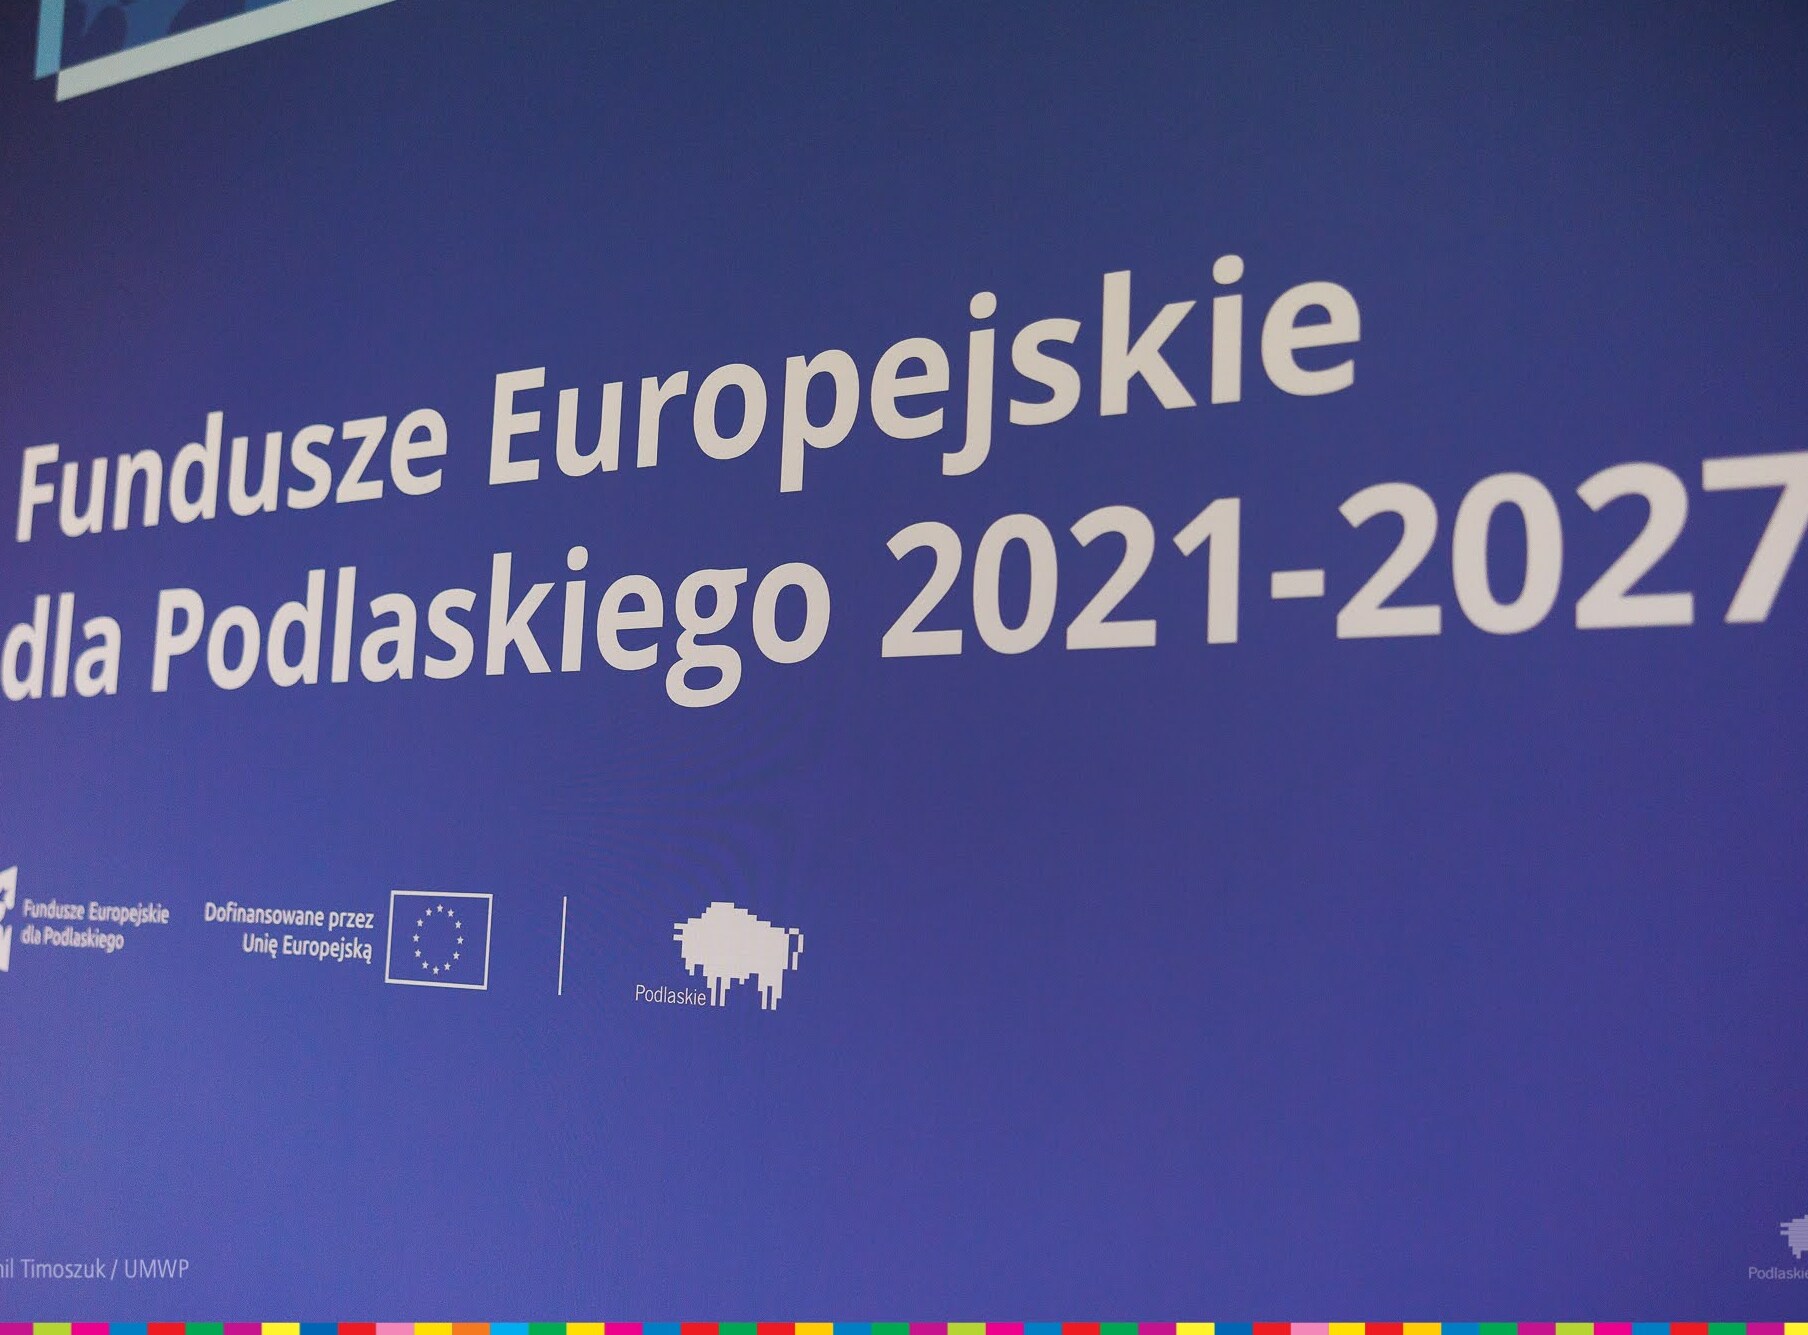 Fundusze Europejskie dla Podlaskiego 2021-2027